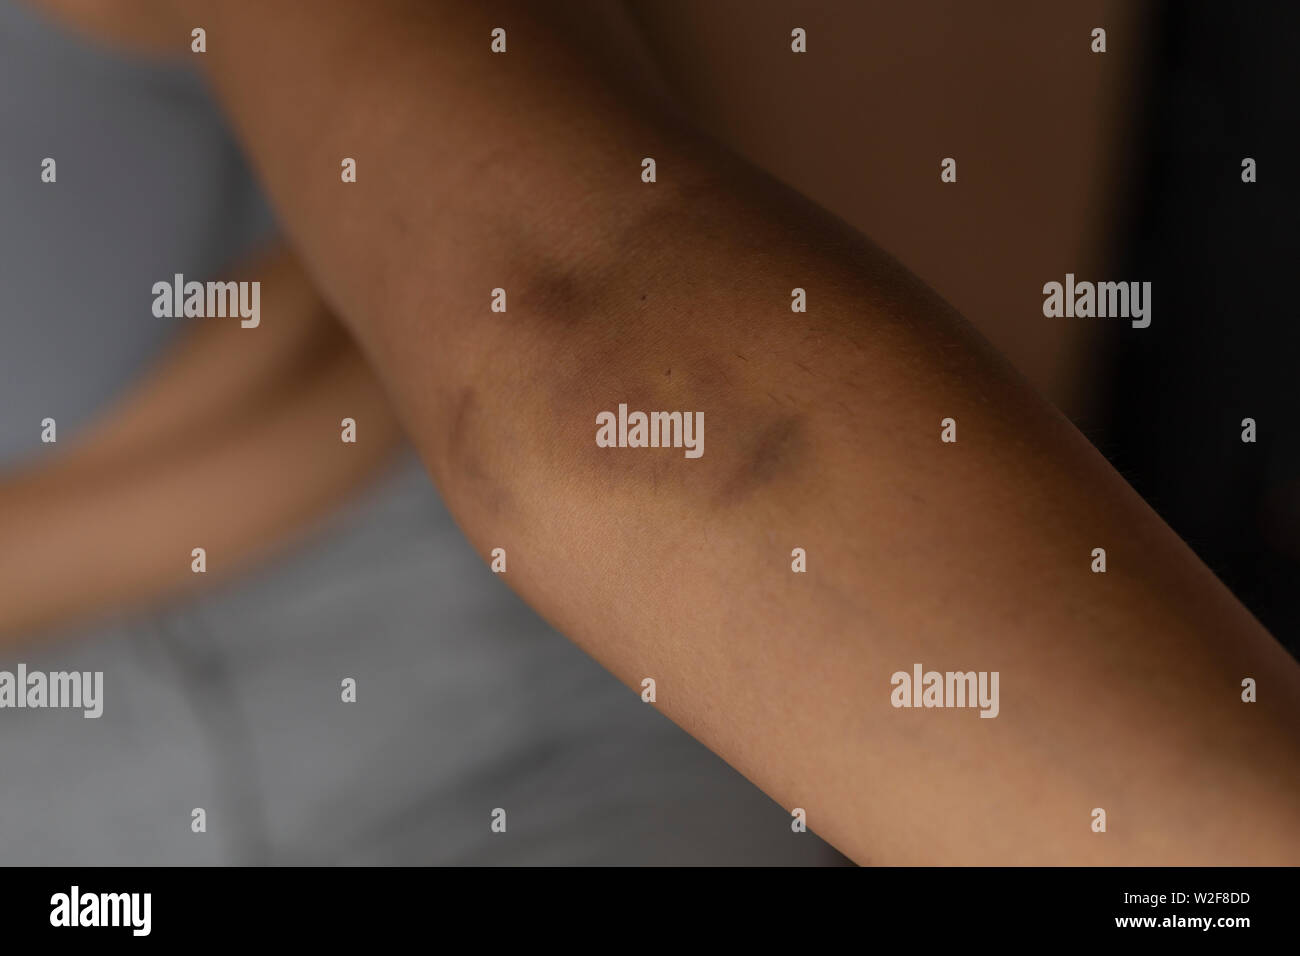 Blaue Flecken auf den Arm eines Frauen-Problem Haut auf dem Arm  Stockfotografie - Alamy